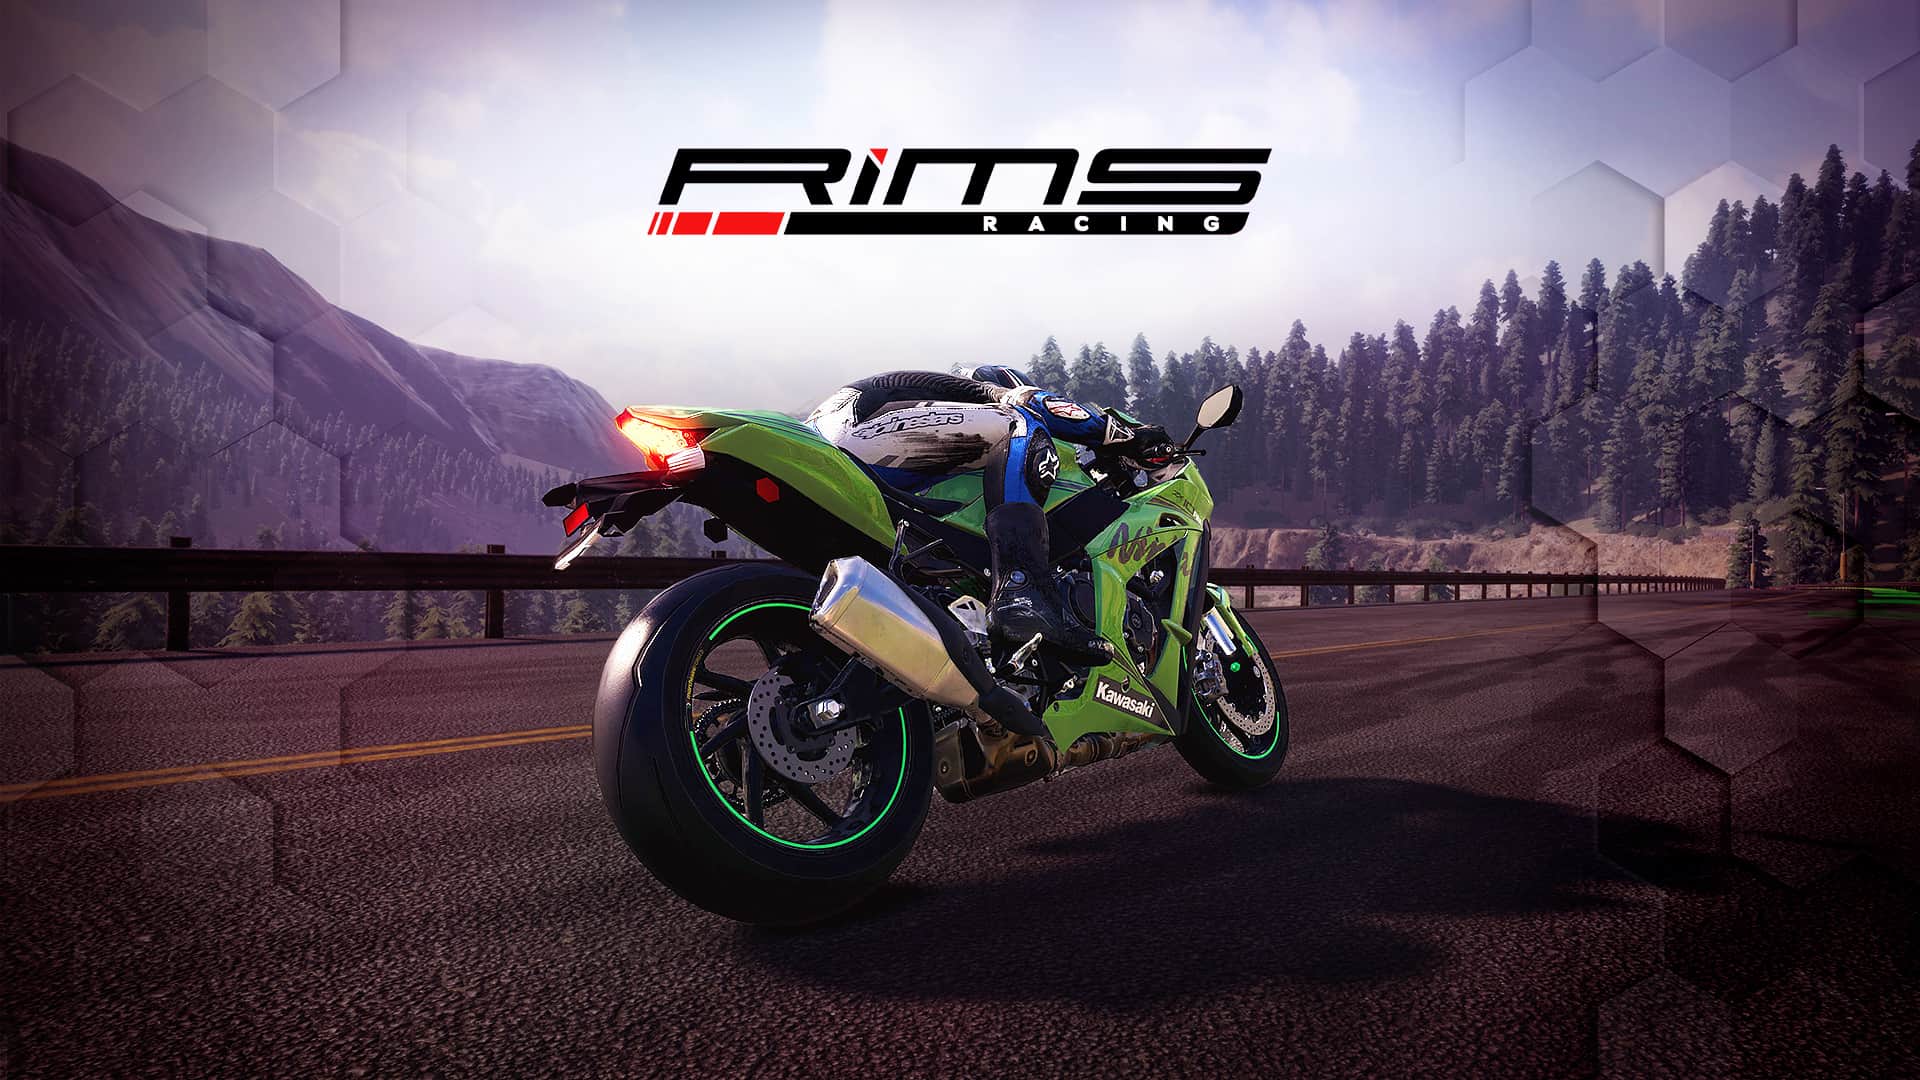 RiMS Racing HD Game Wallpapers